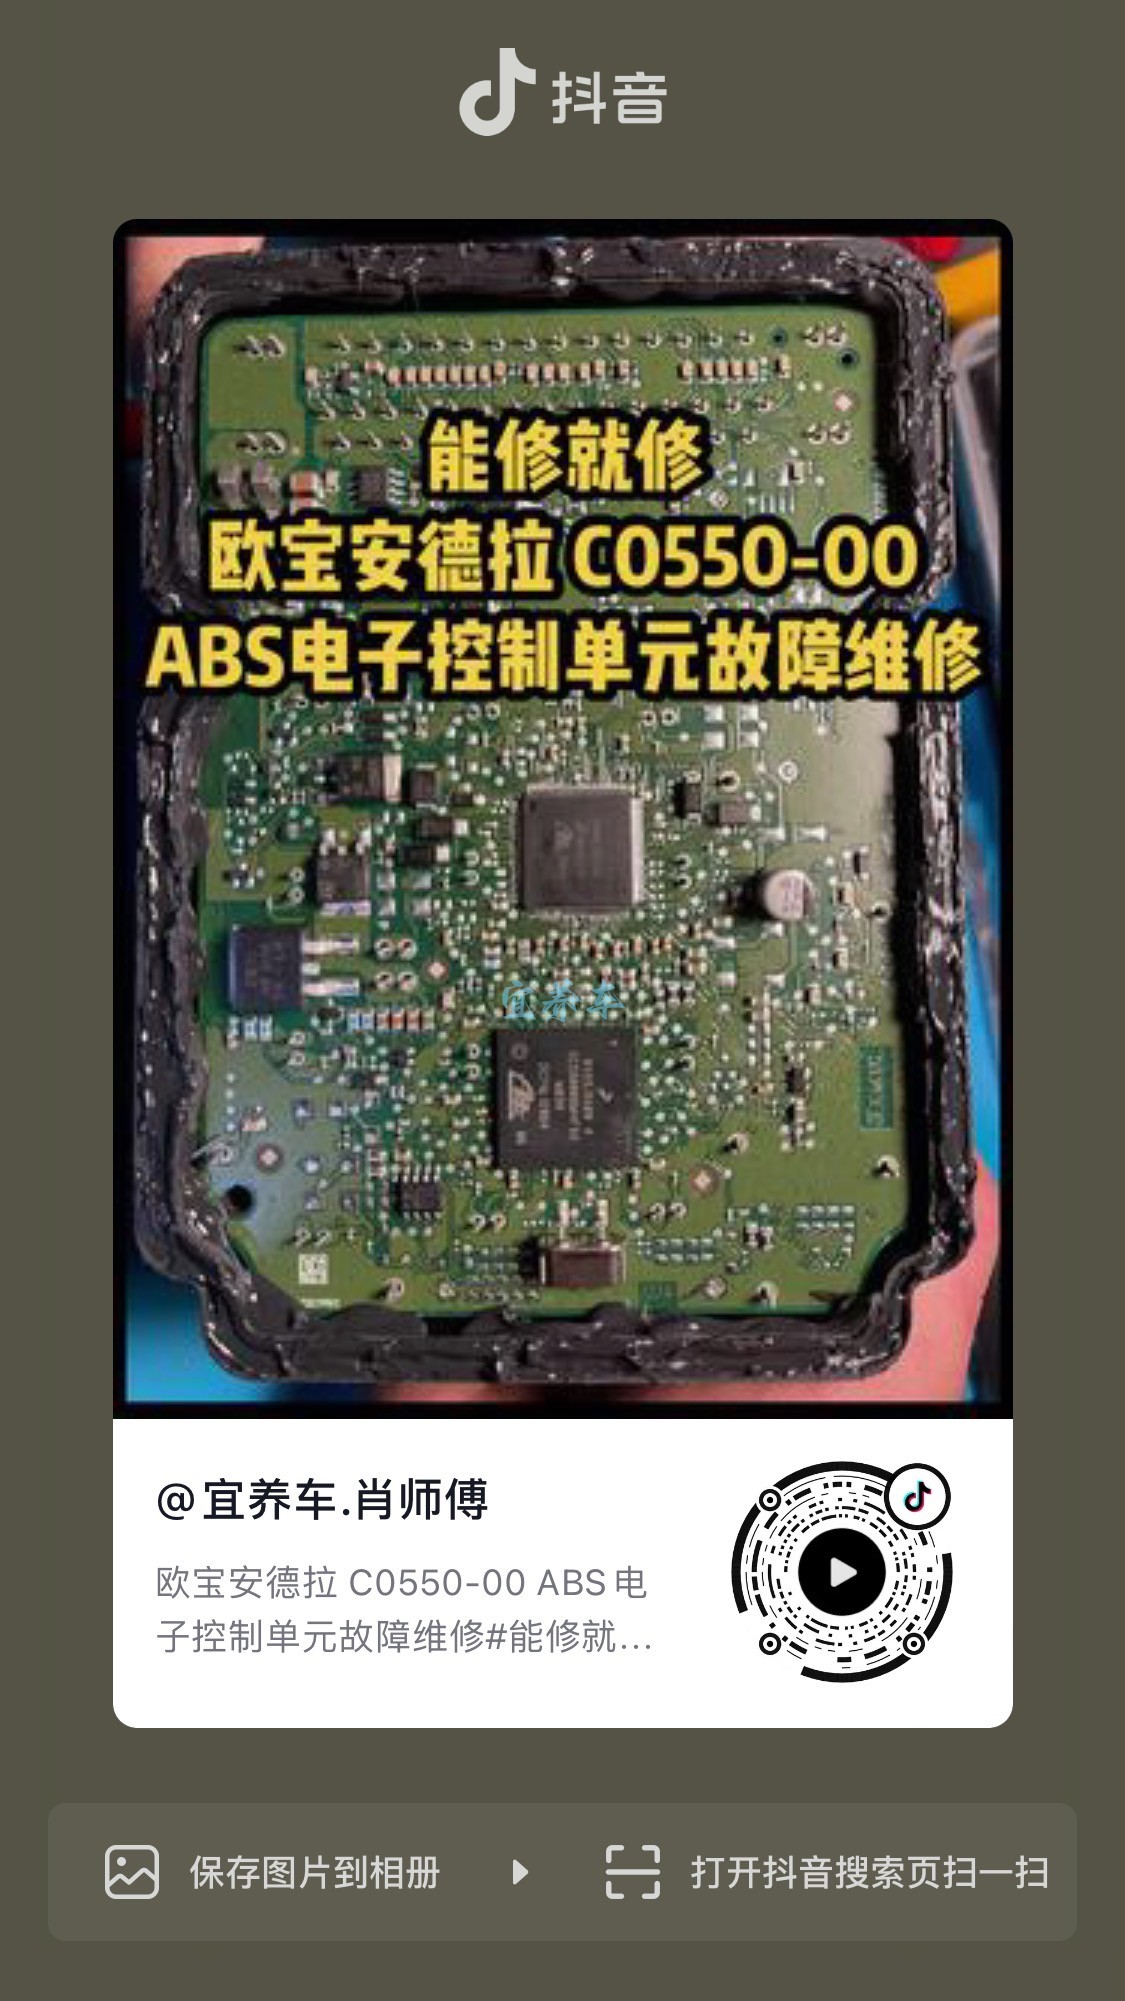 欧宝安德拉C0550-00 ABS电子控制单元故障维修